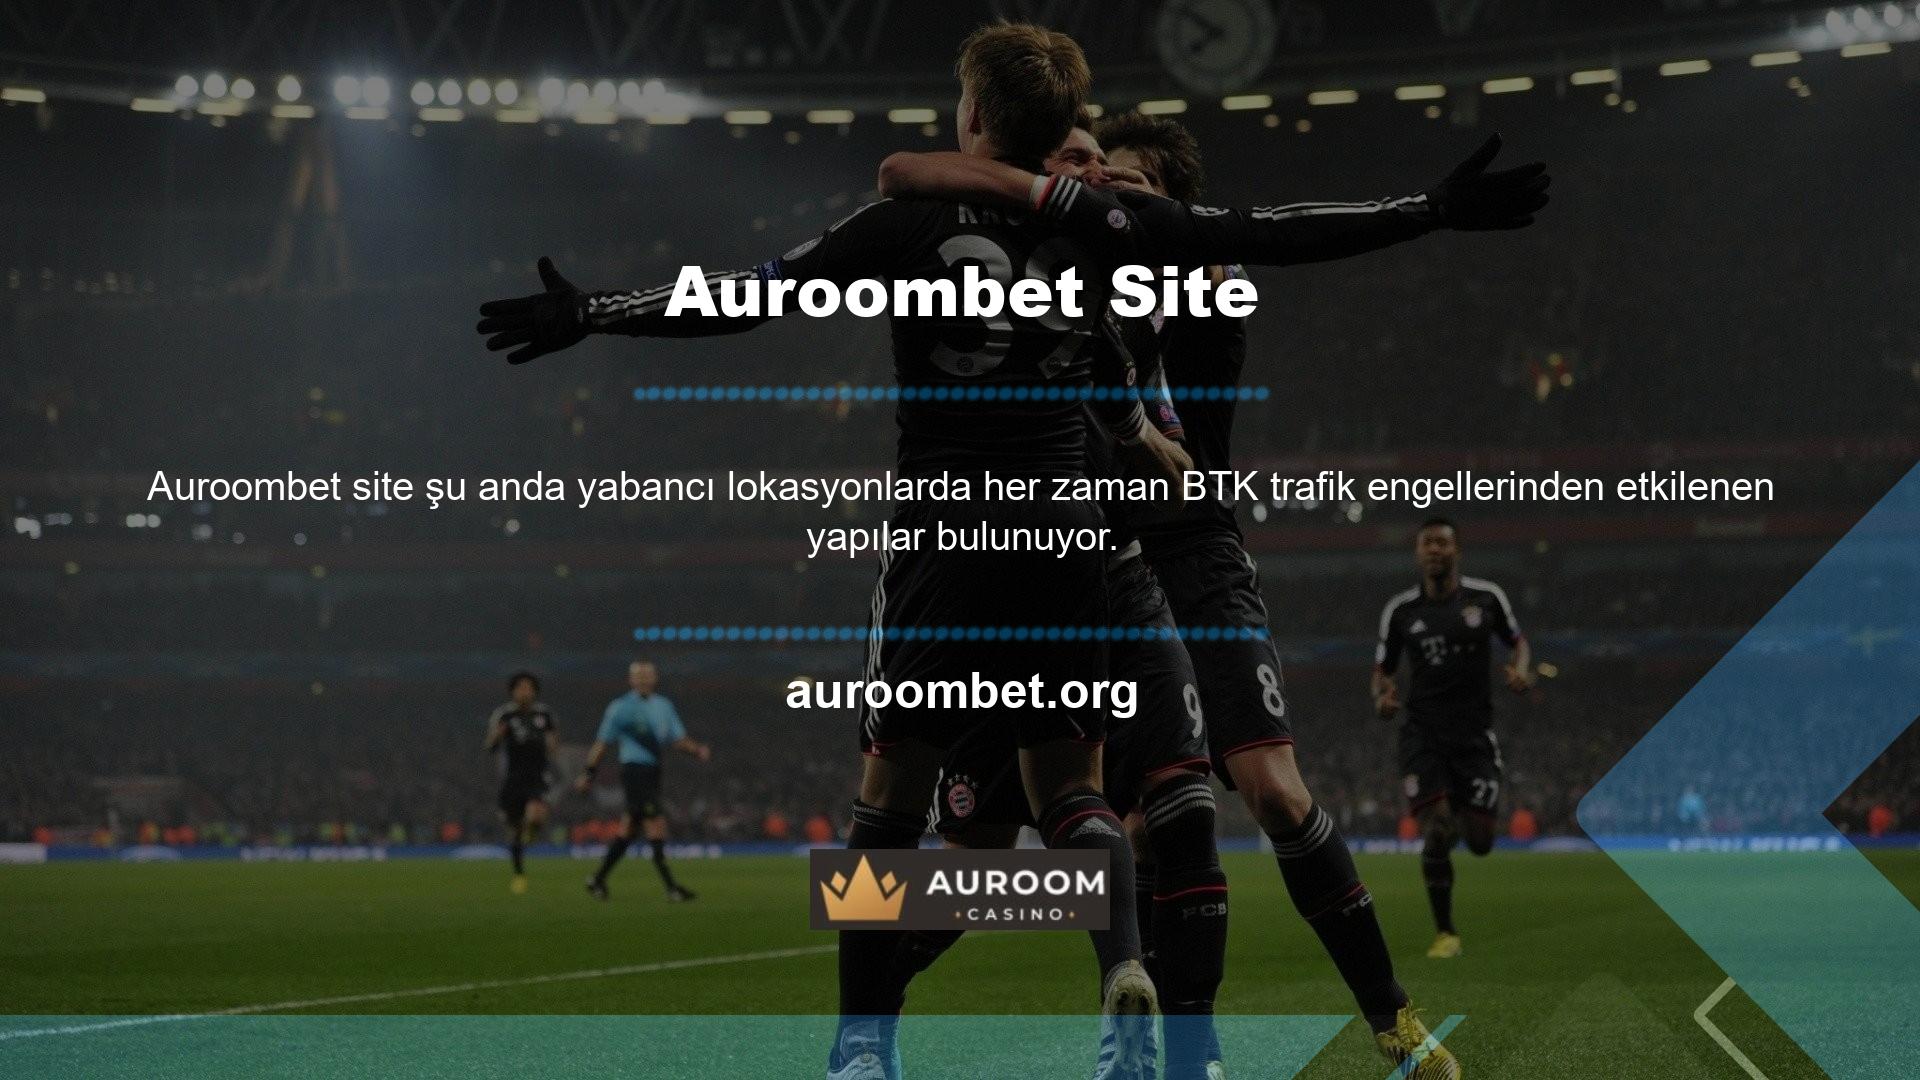 Bu durumda Auroombet mobil girişleri engellemesinin ardından birçok web sitesi yeni alan adı adreslerini güncellemeye başladı